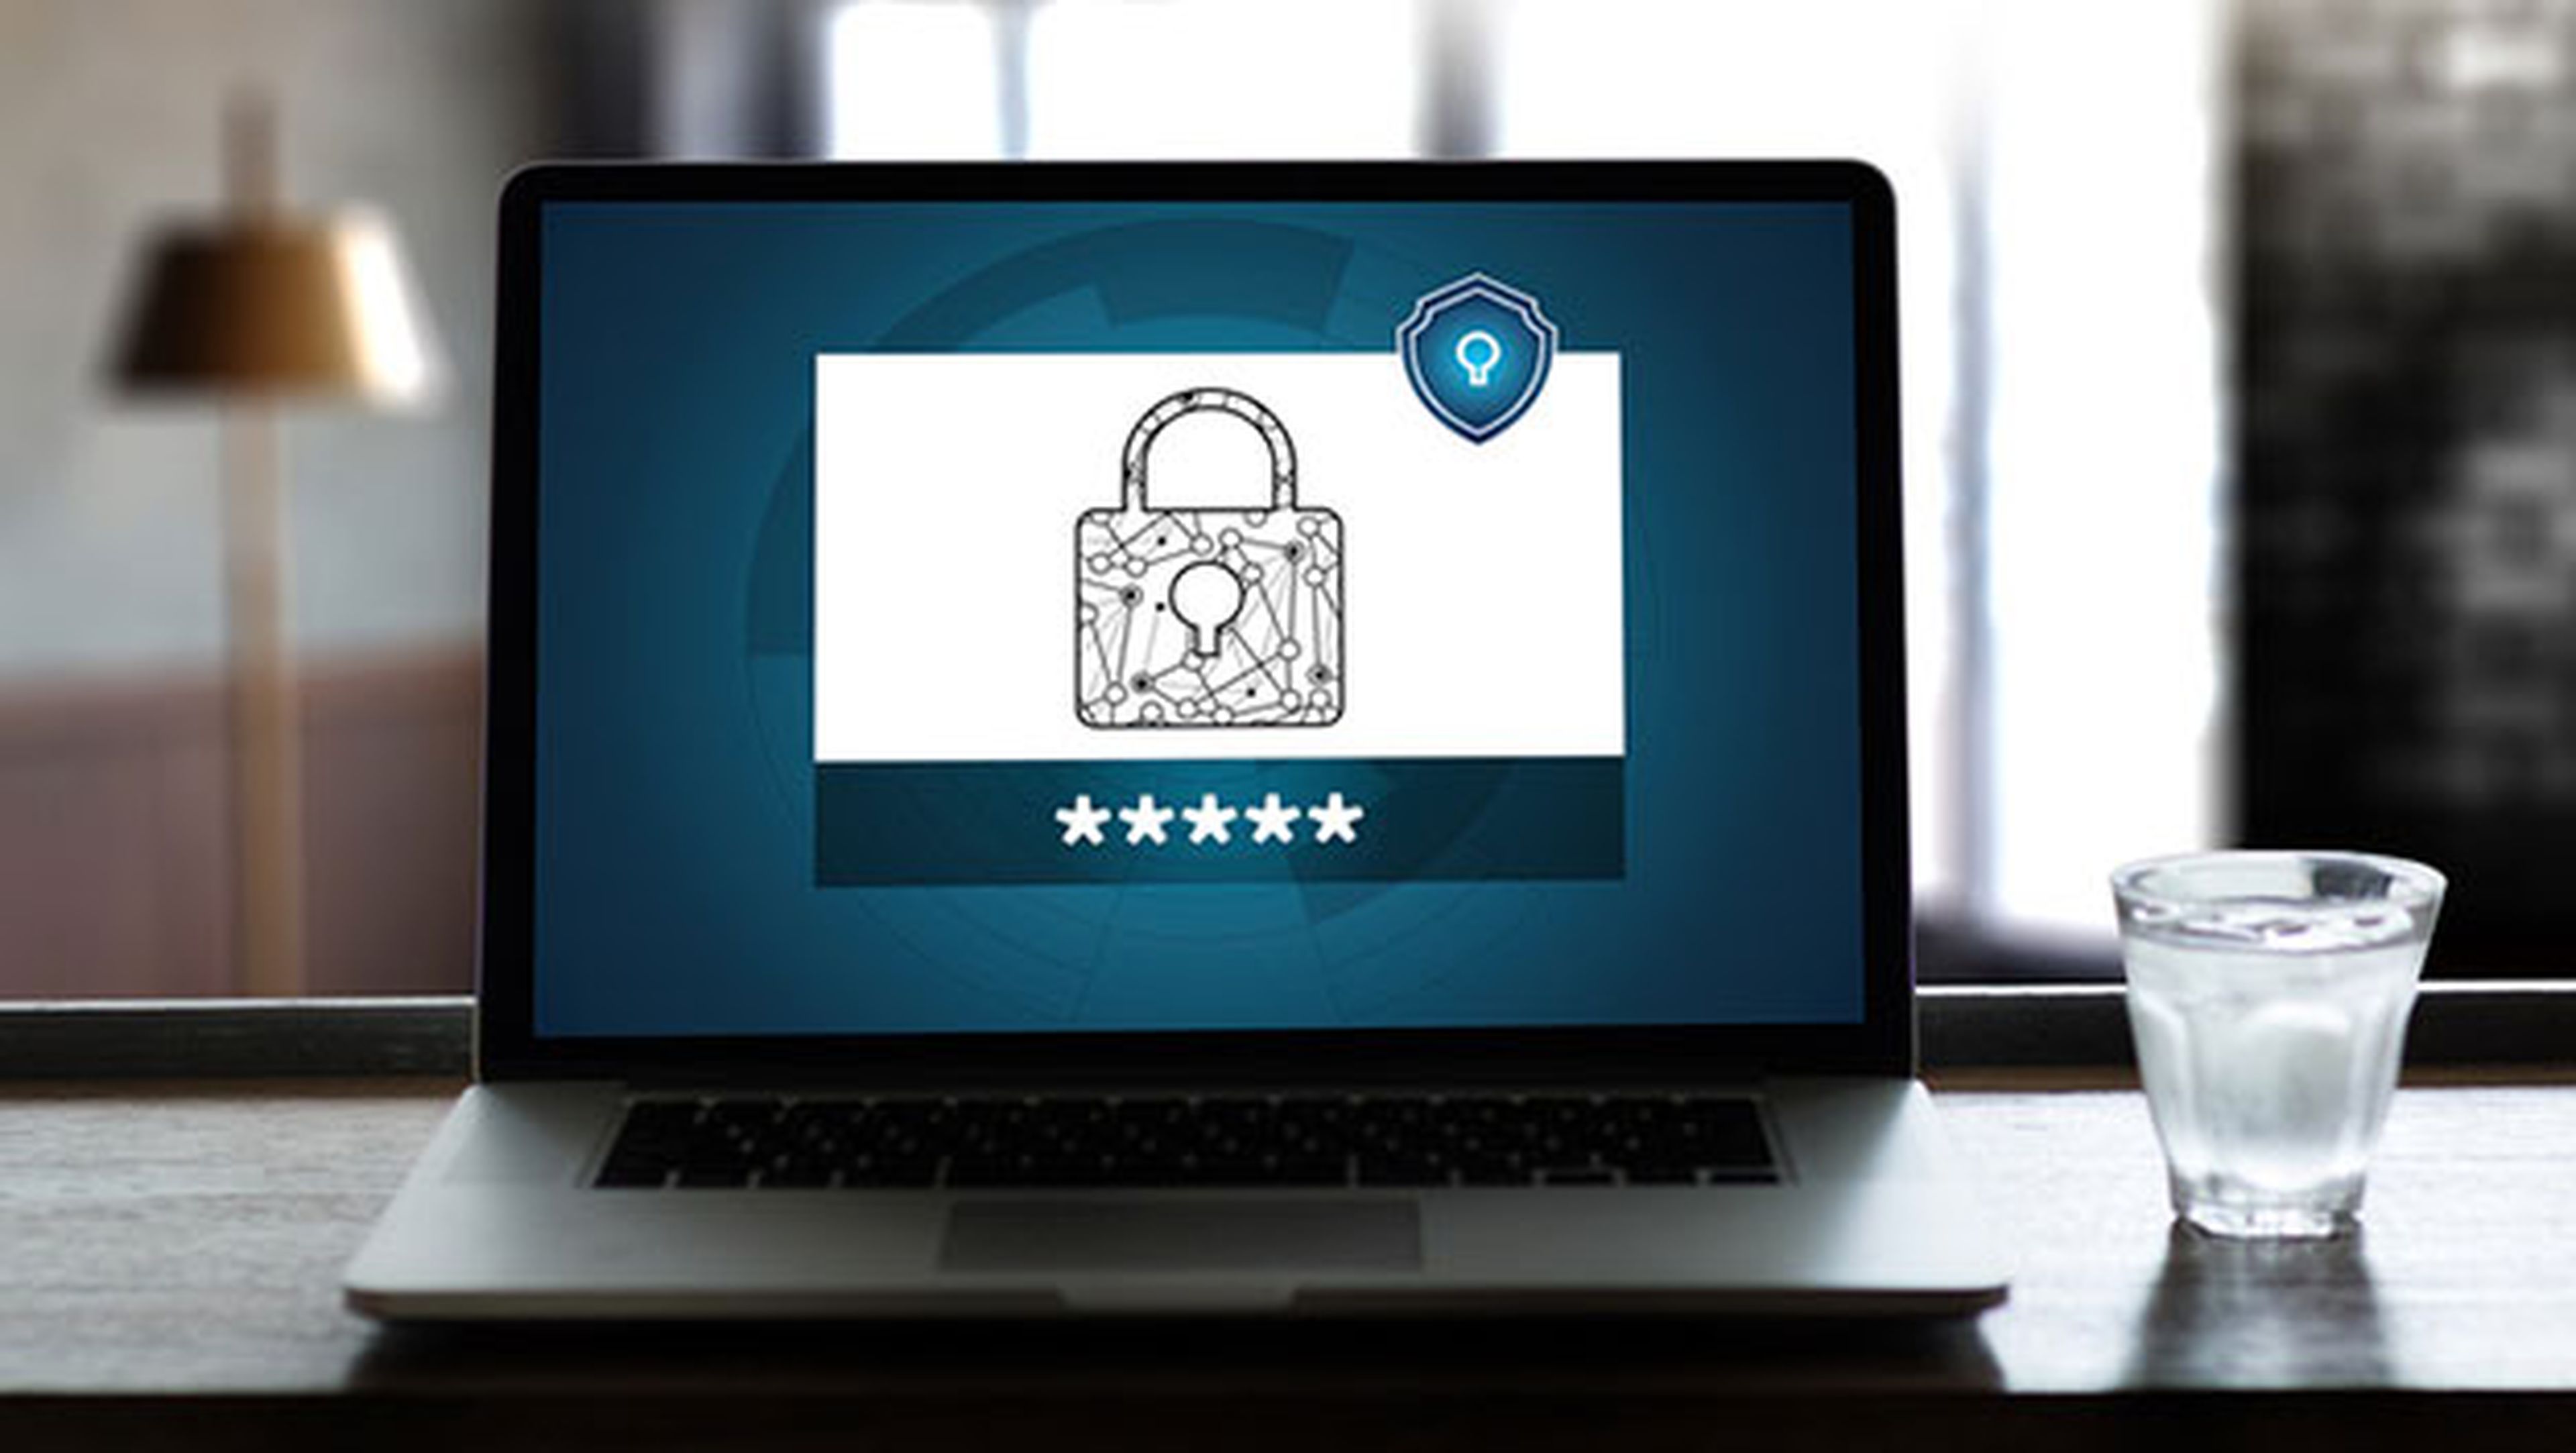 Secure data protege los archivos privados de tu portátil